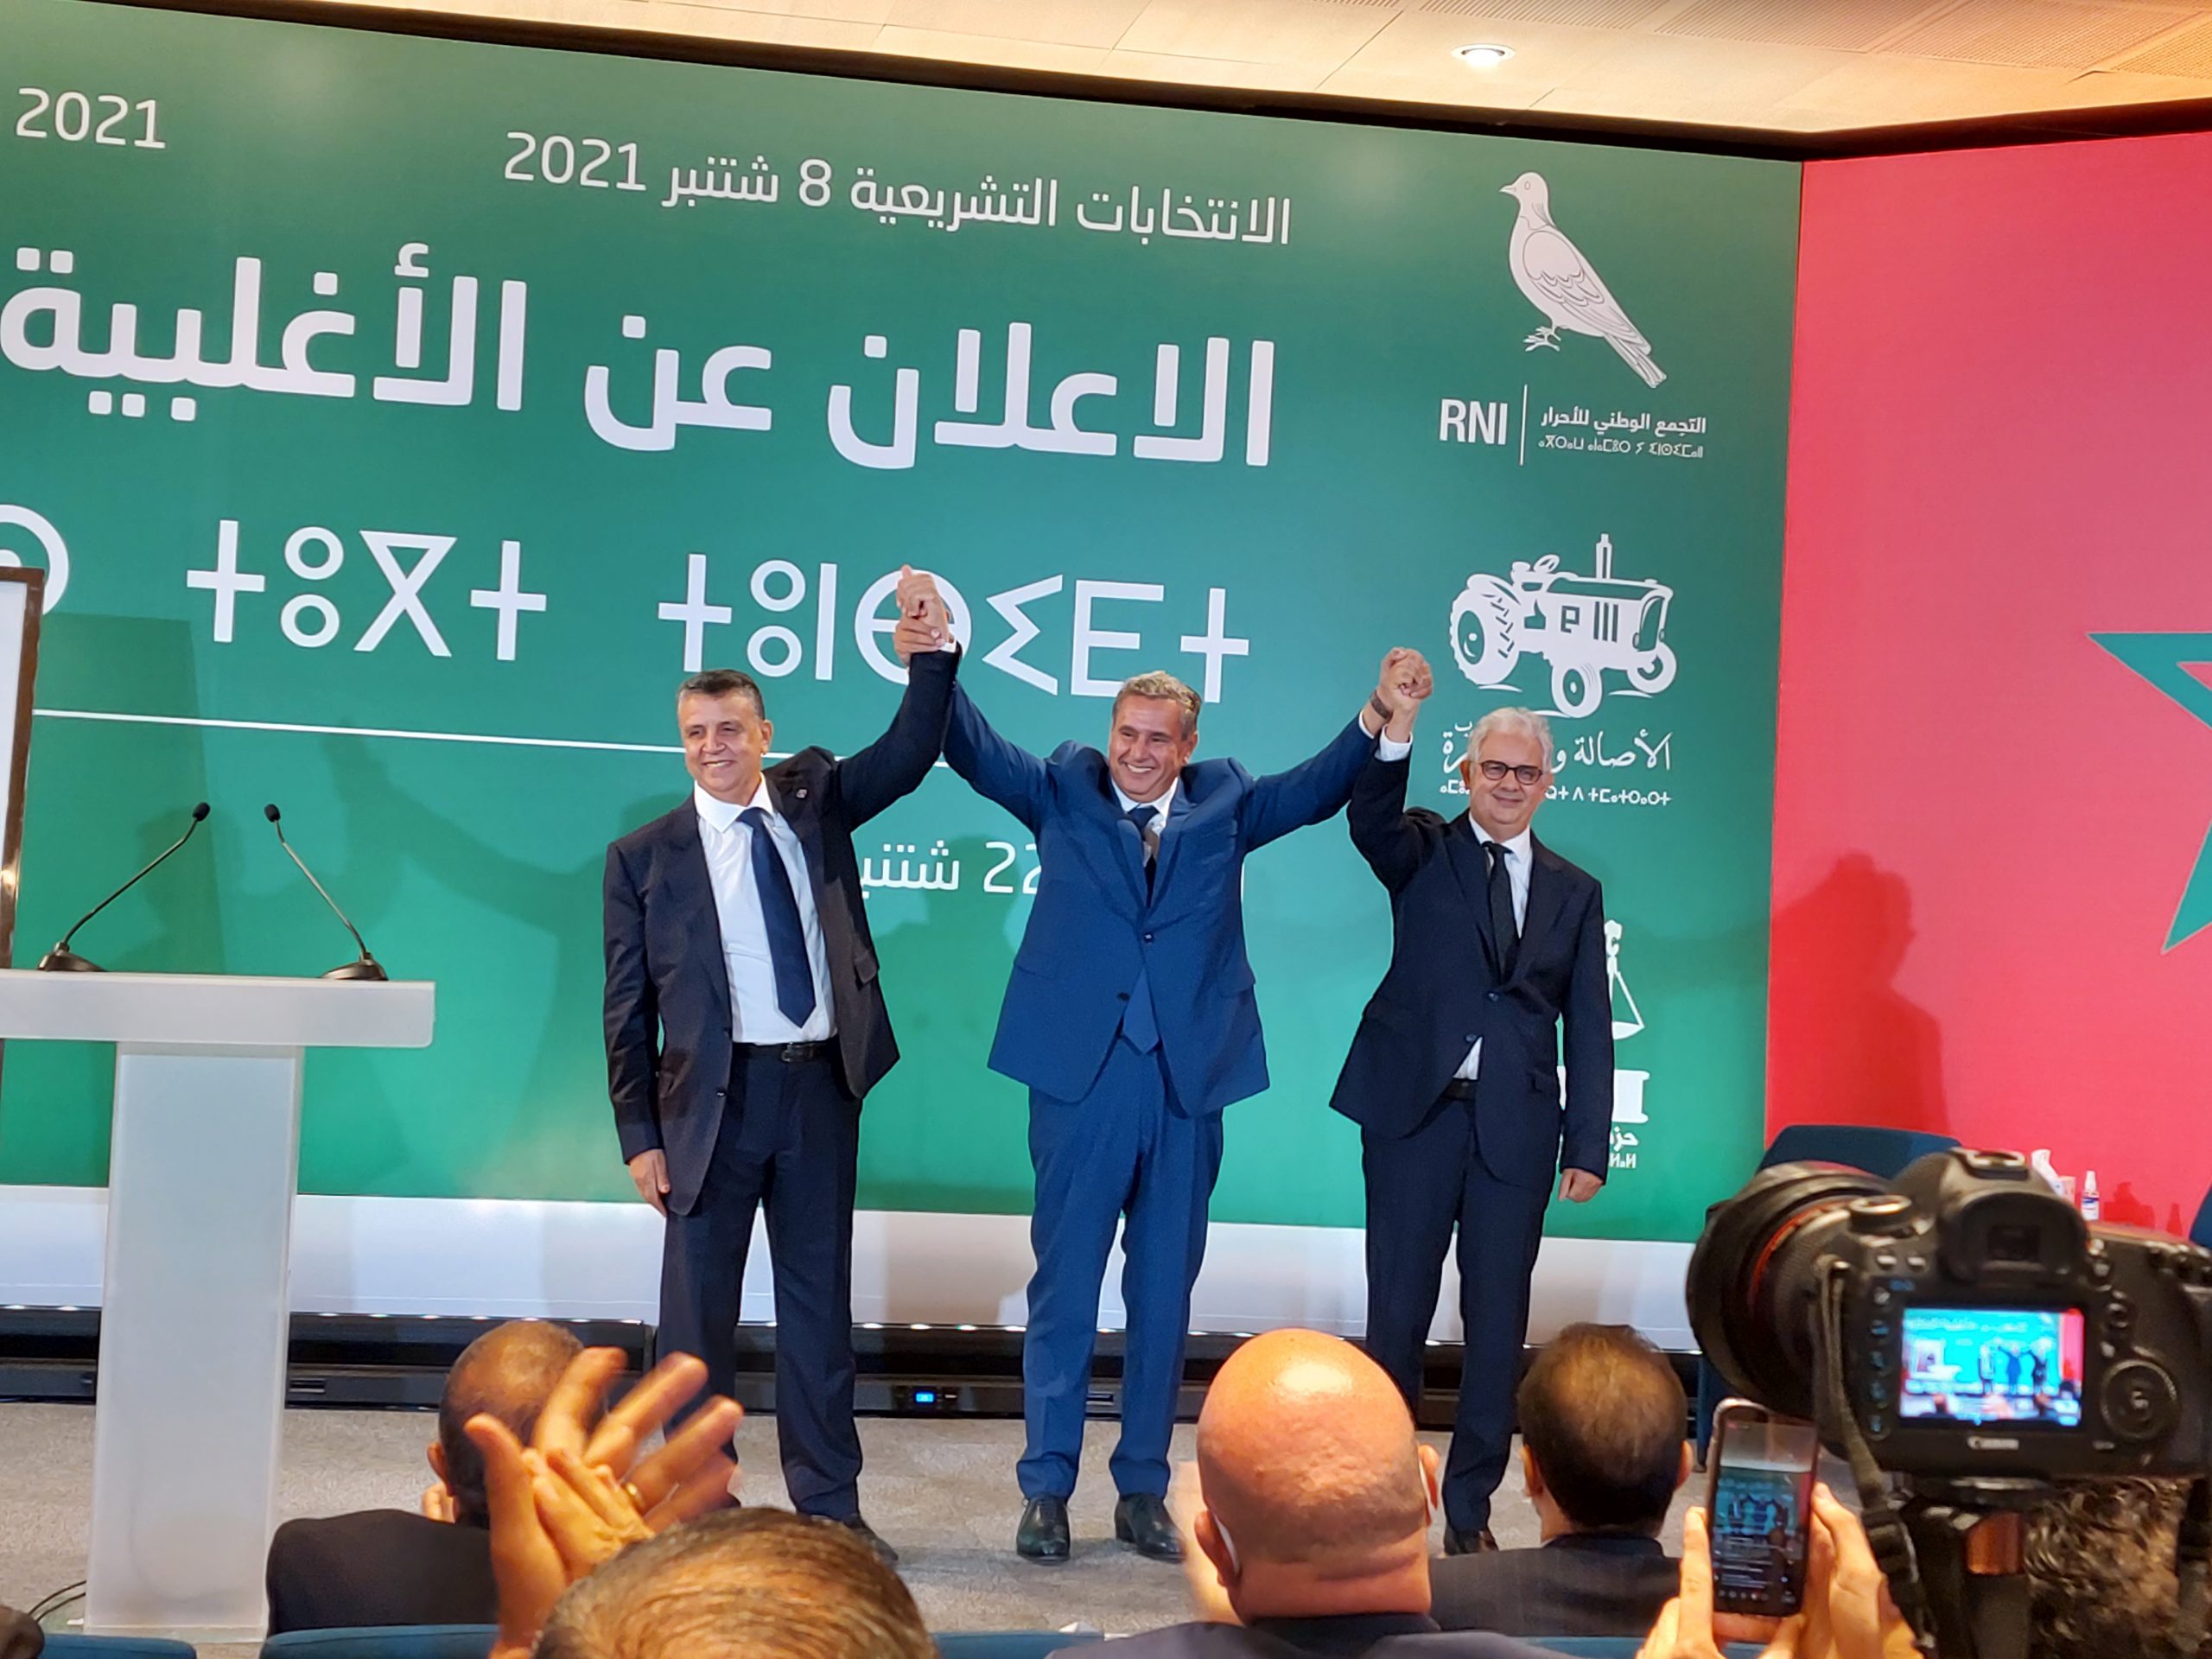 أخنوش يعلن عن الأغلبية ويعد بإختيار وزراء في مستوى تطلعات المغاربة